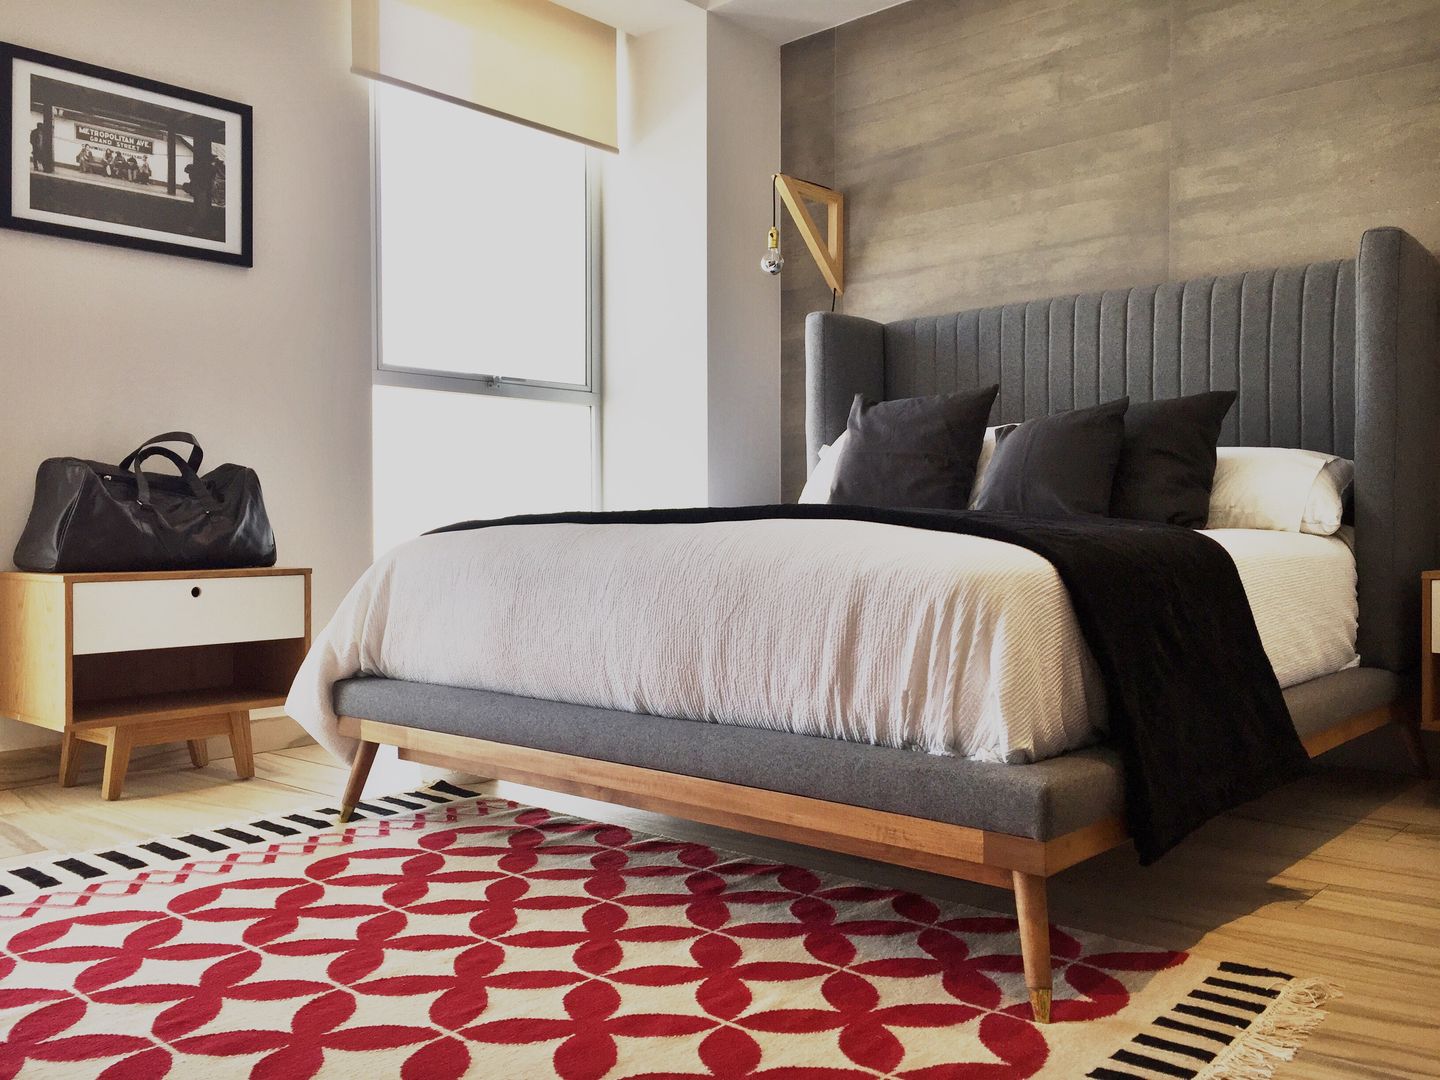 Argenta 1004, S P A C E L A B S P A C E L A B Modern style bedroom Beds & headboards